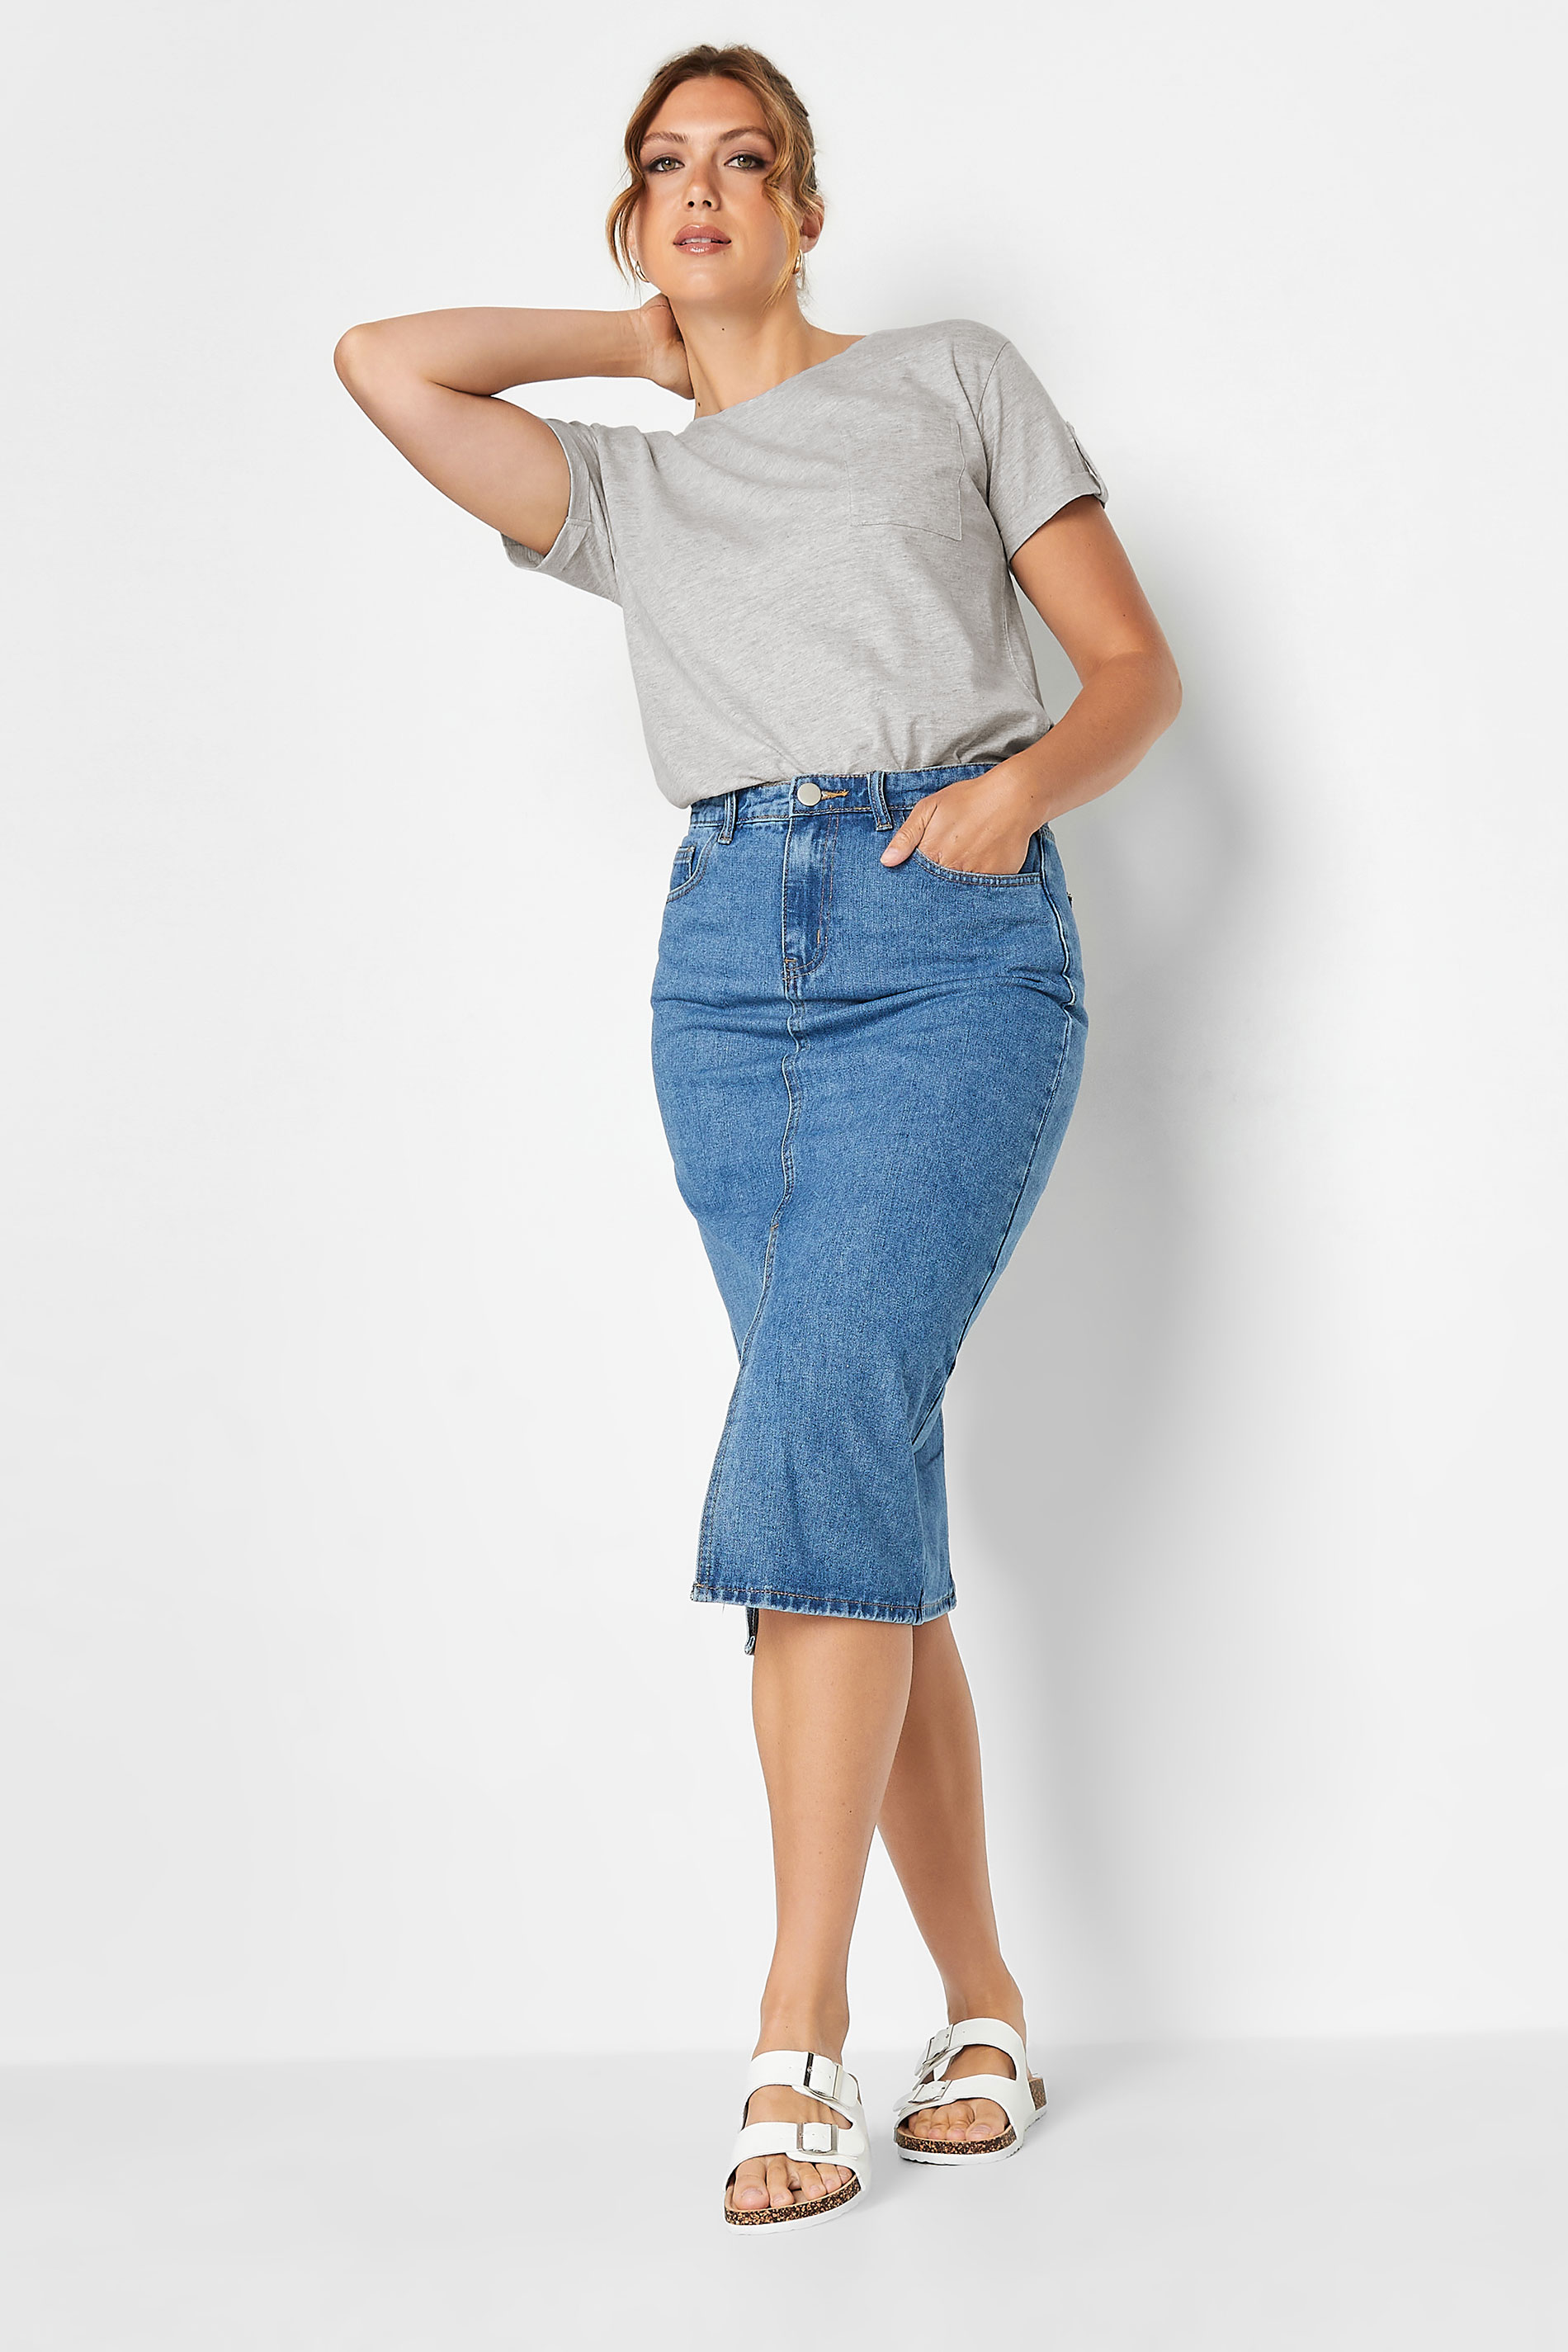 Tall Women's LTS Grey Short Sleeve Pocket T-Shirt | Long Tall Sally 2